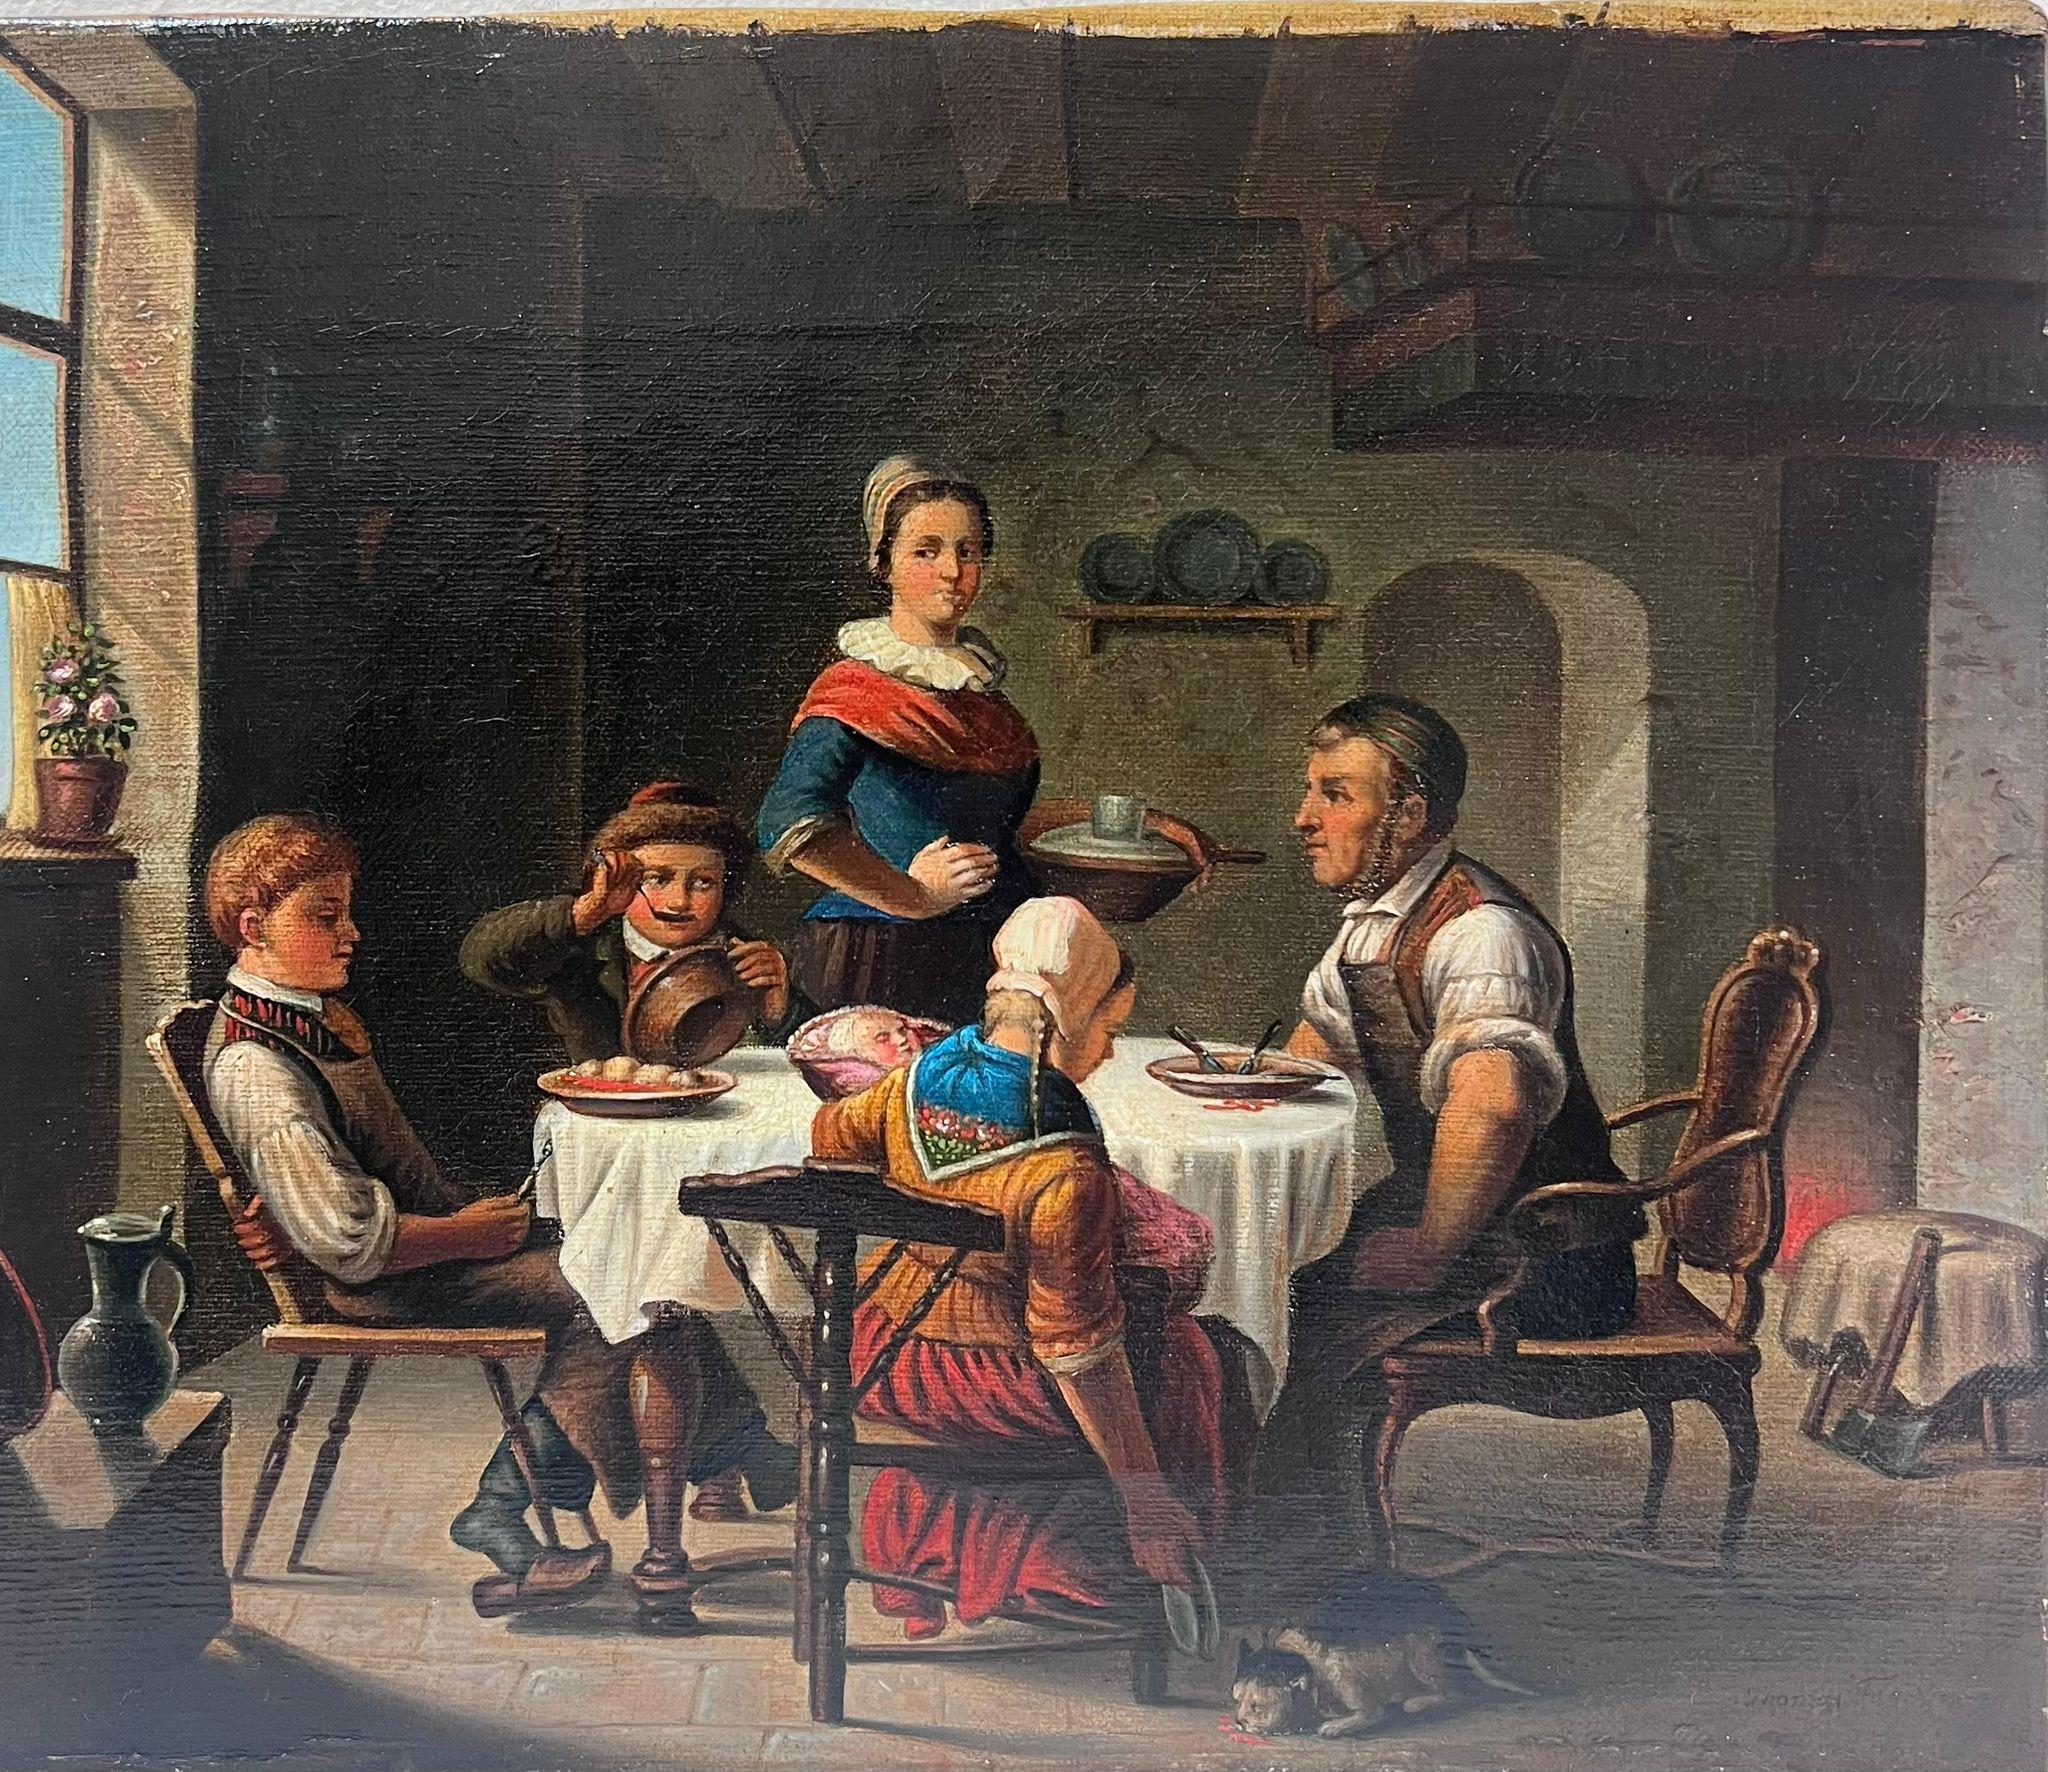 Schönes Landhaus-Interieur aus dem 19. Jahrhundert, junge Familie, die gemeinsam mexikanische Mahlzeit genießen – Painting von German School